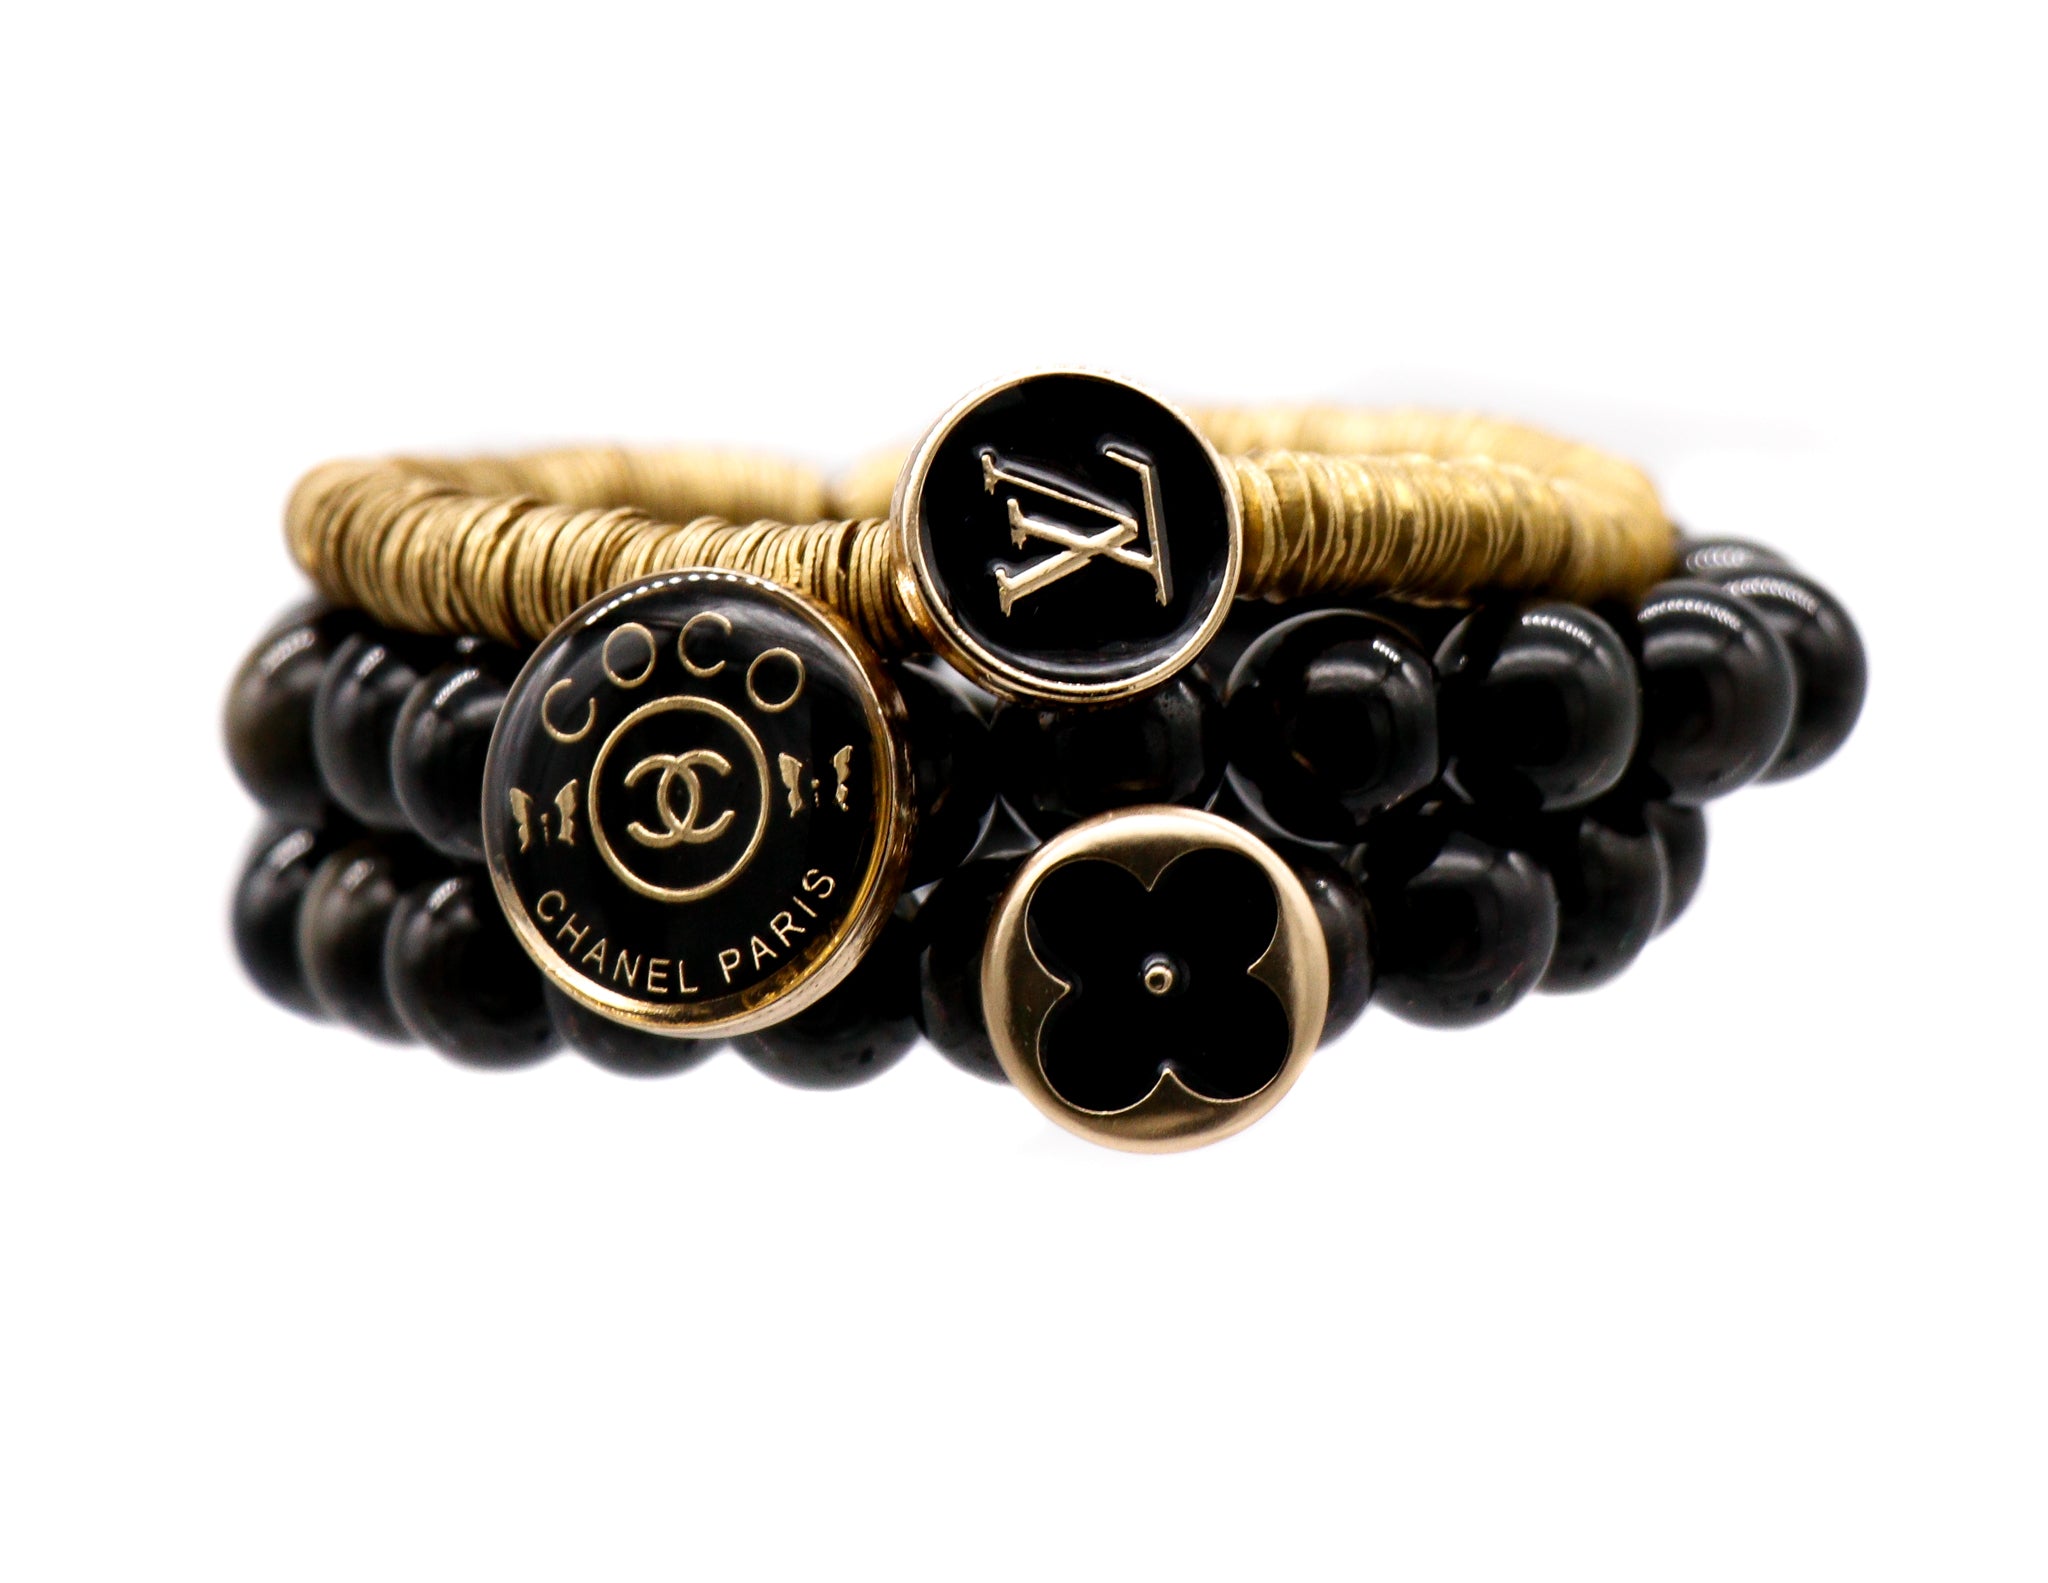 Black repurposed designer button bracelet